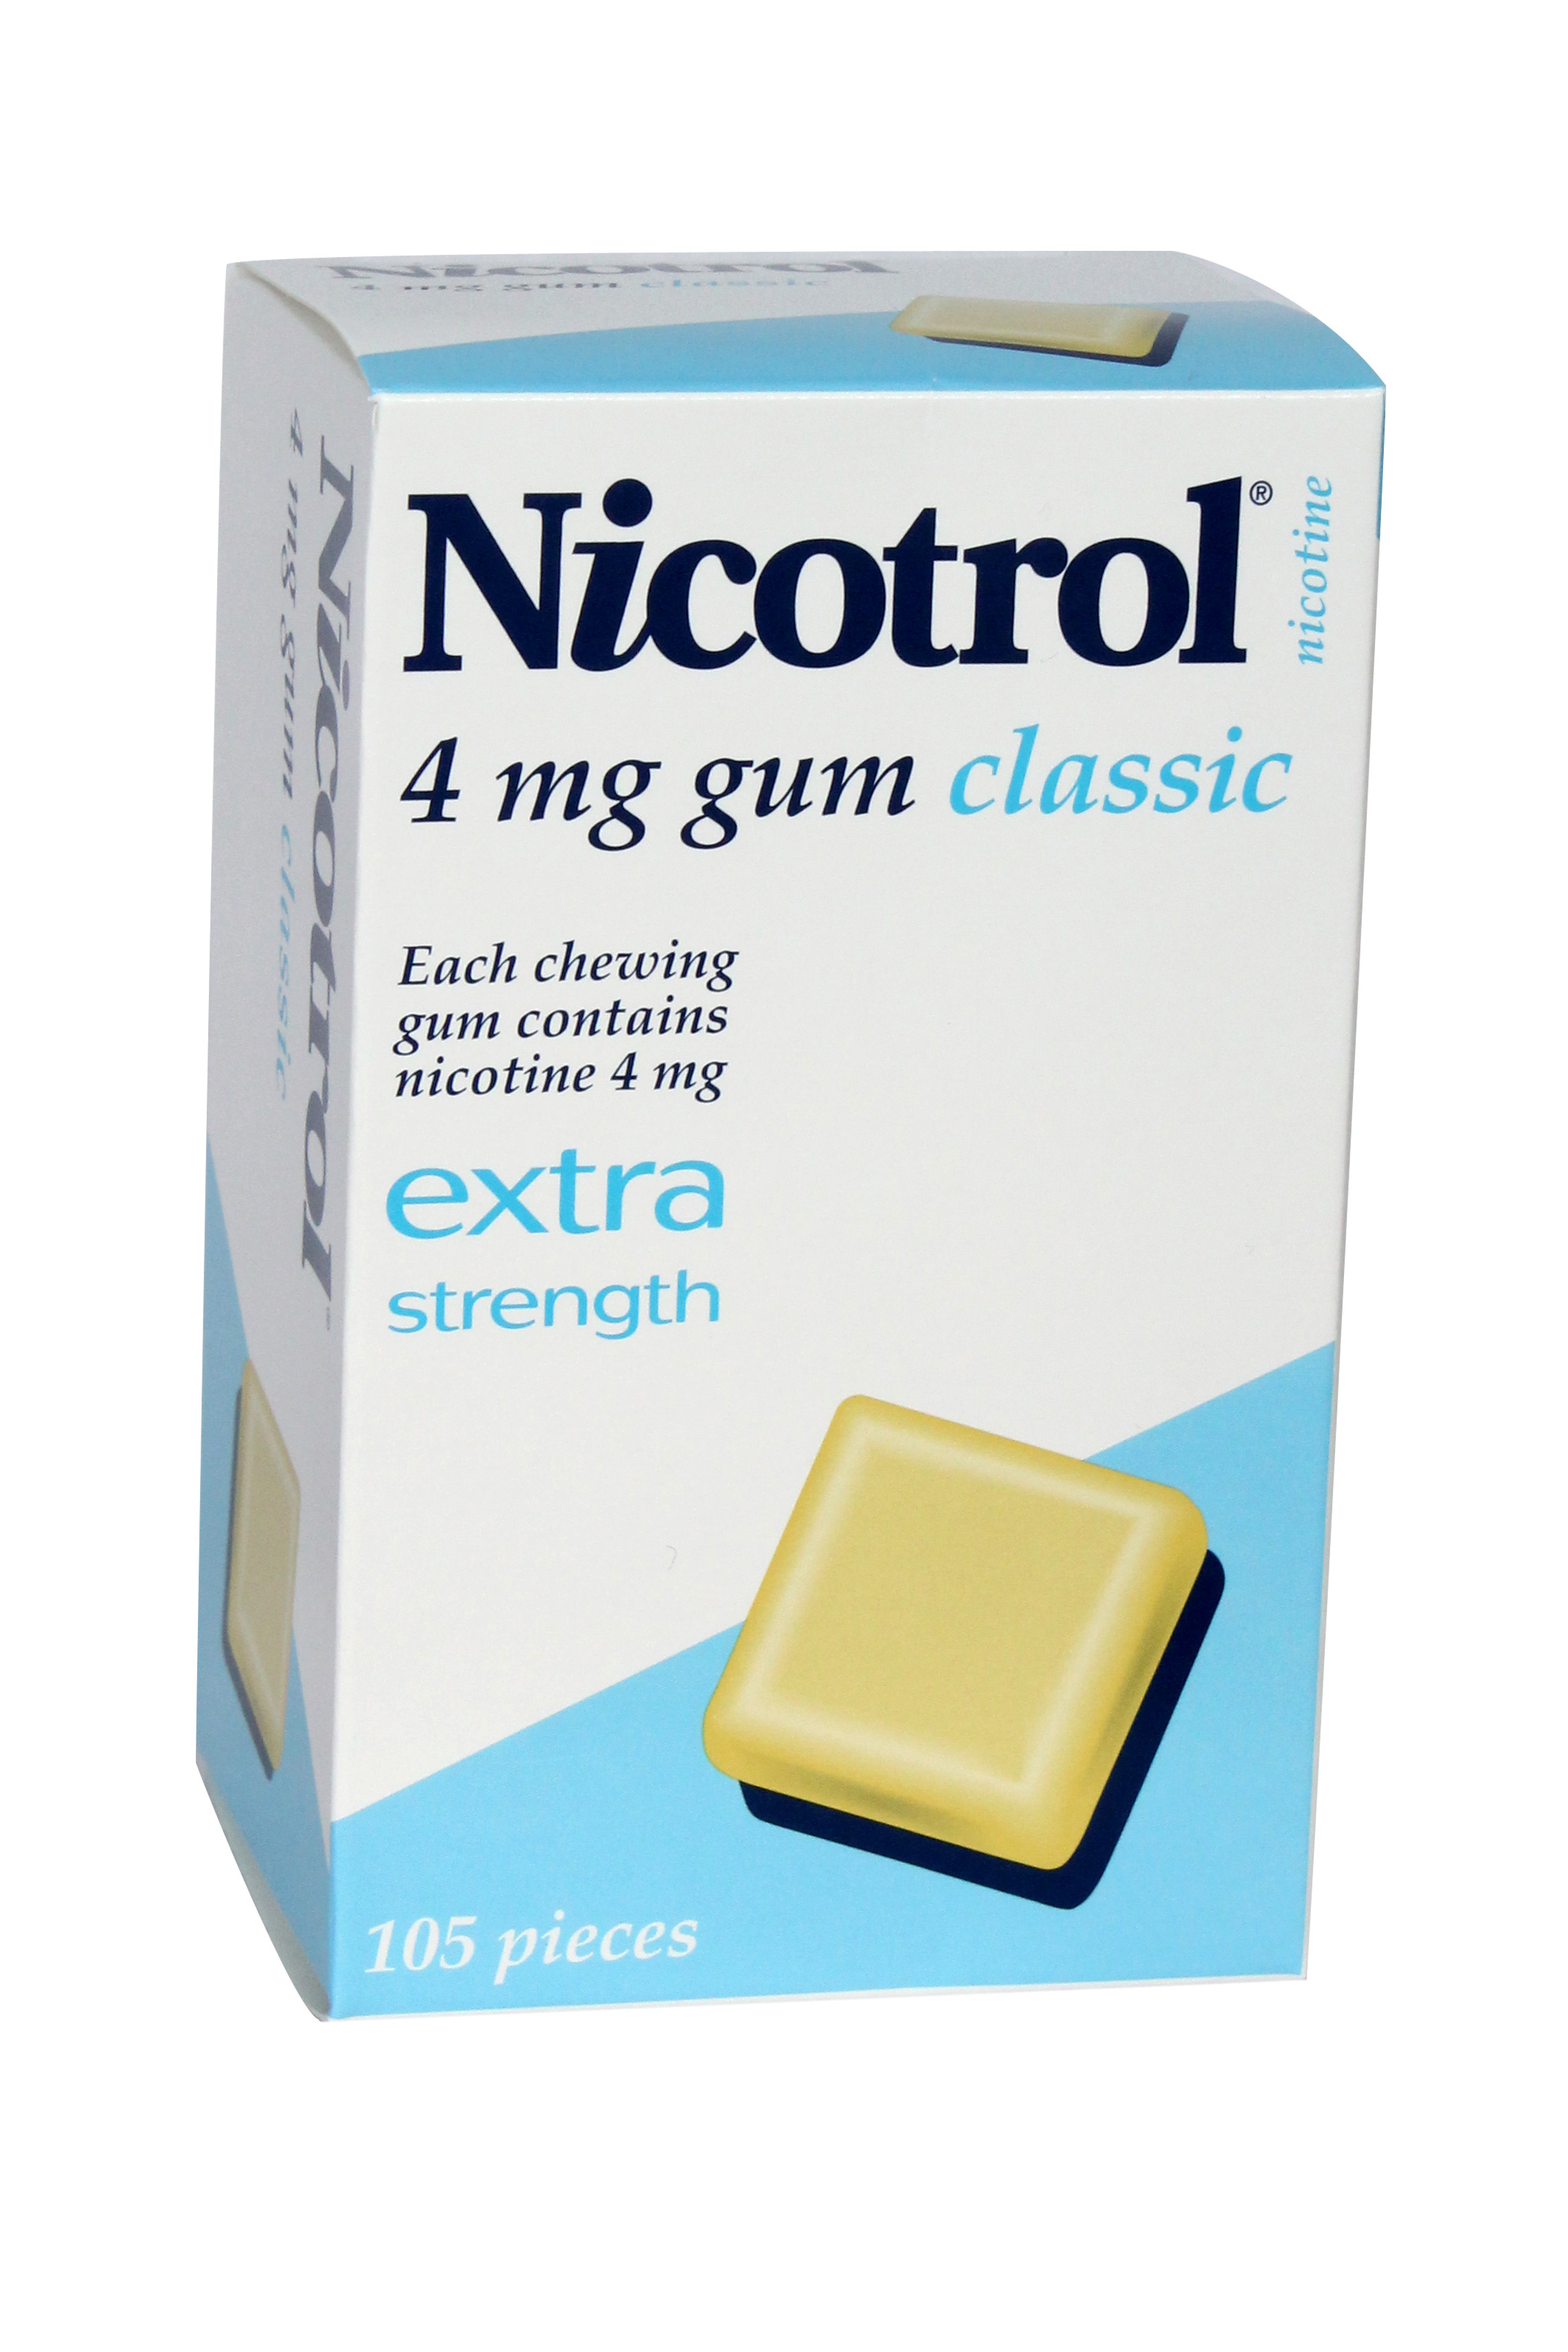 Nicotrol **4mg** x 24 packs